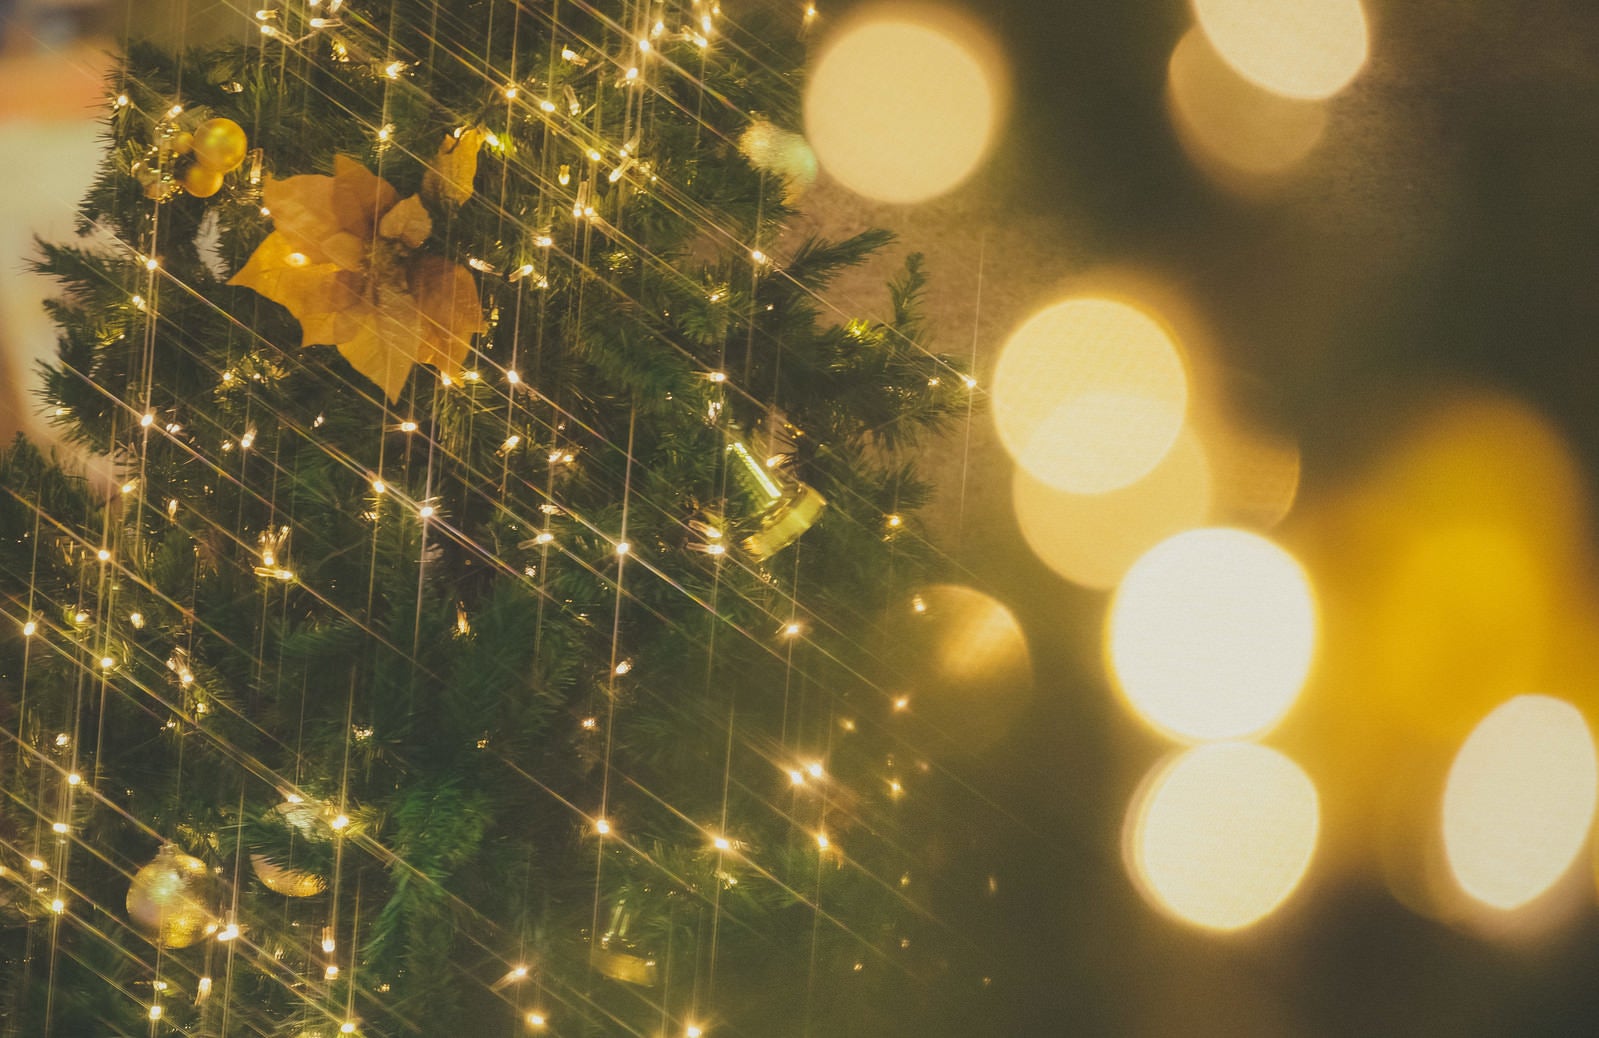 「ライトアップとクリスマスツリー」の写真